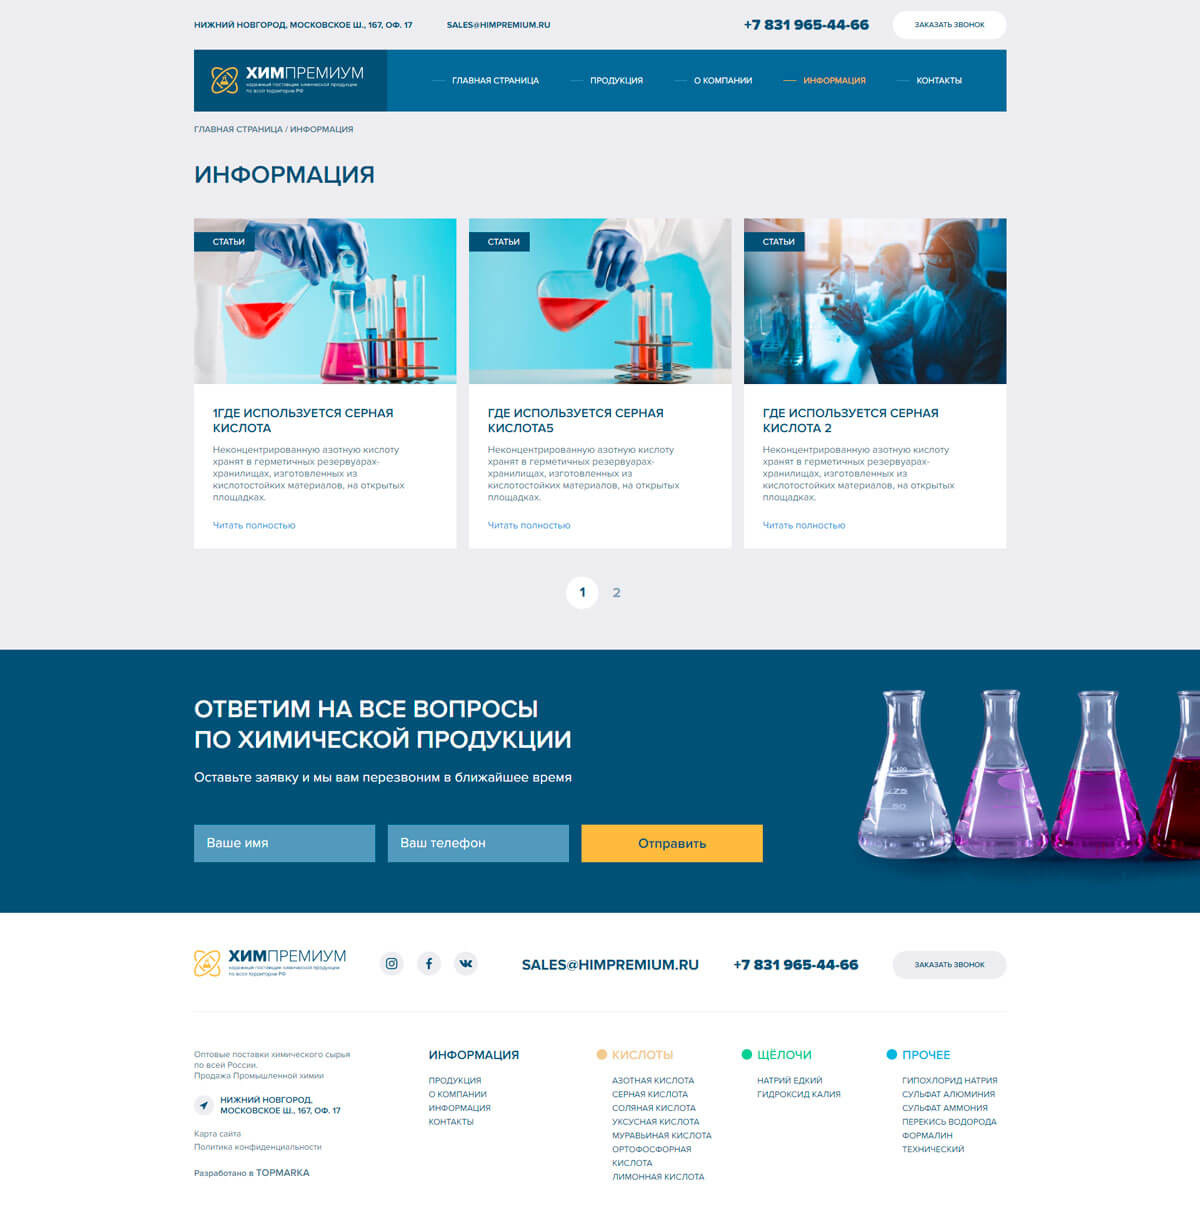 Создание сайта для «ХимПремиум» - продажа промышленной химии